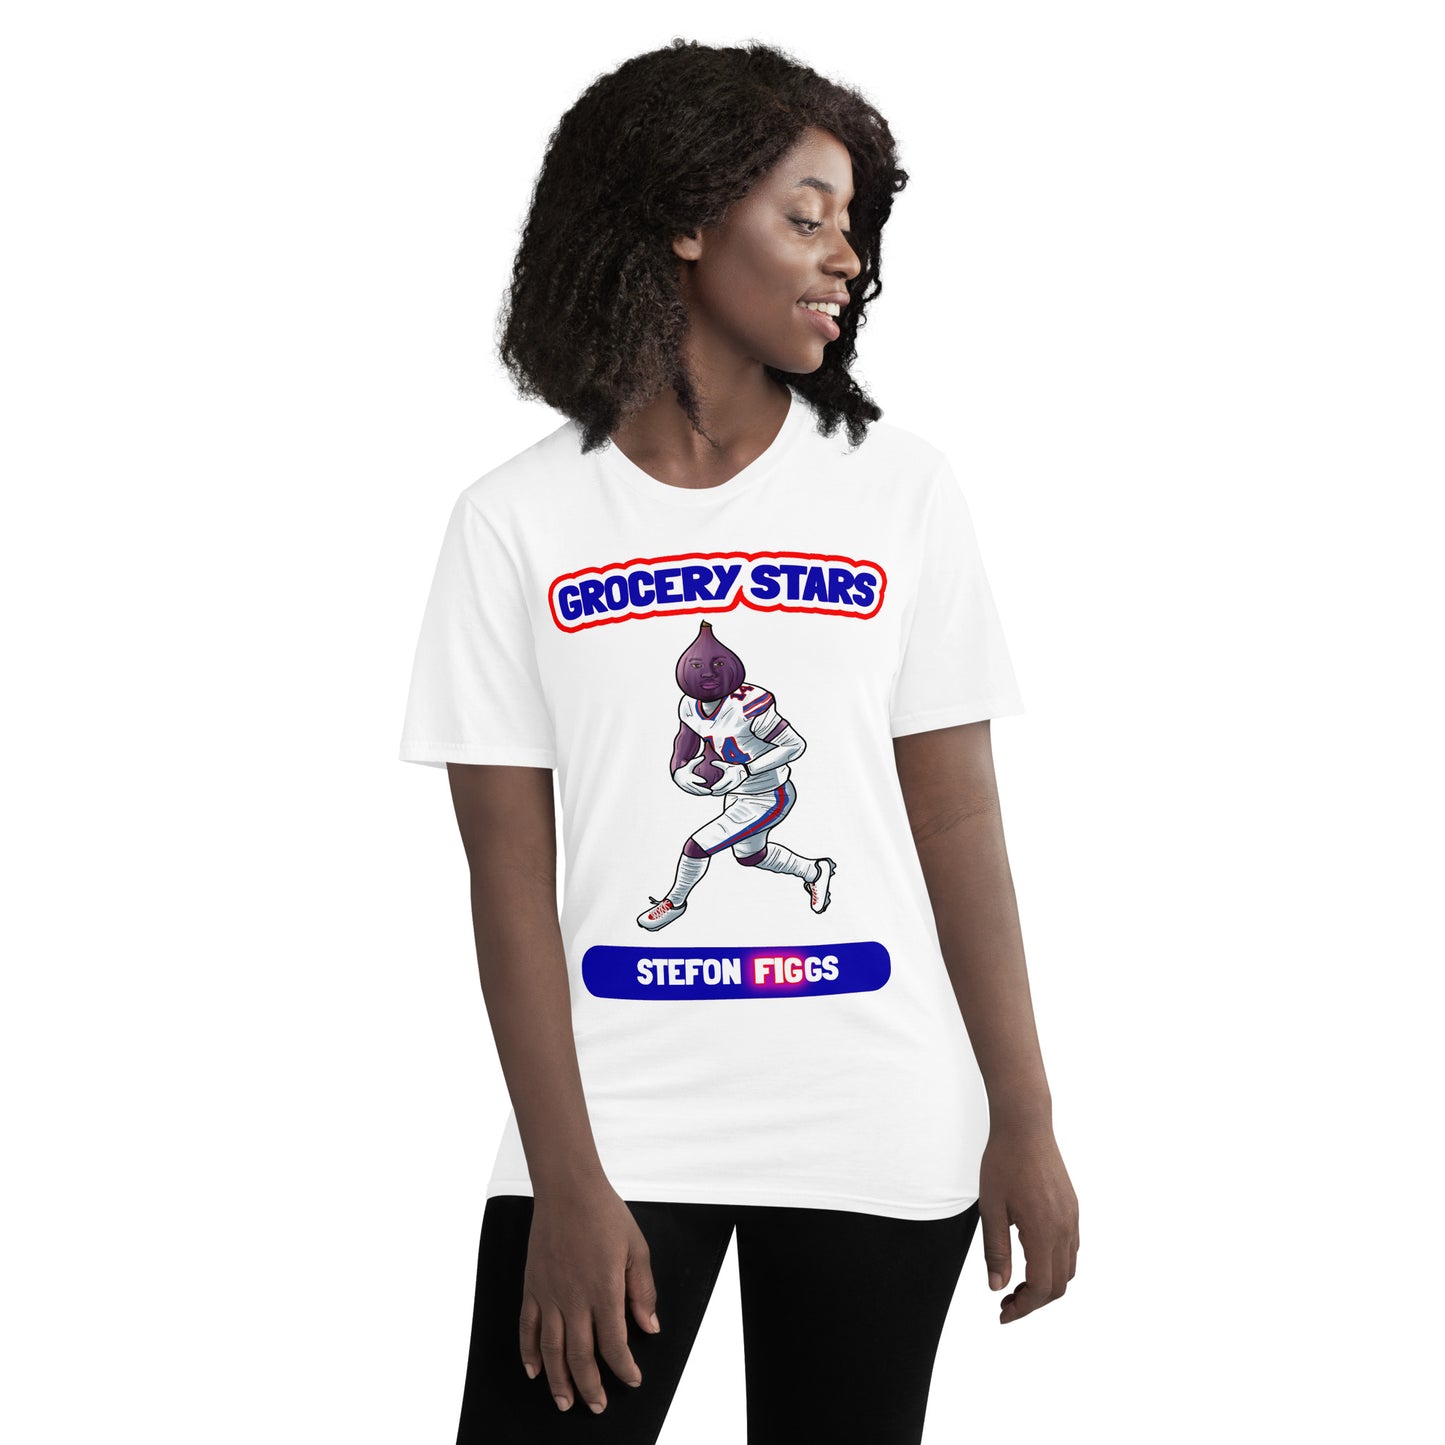 Stefon Figgs - Women's Short-Sleeve T-Shirt